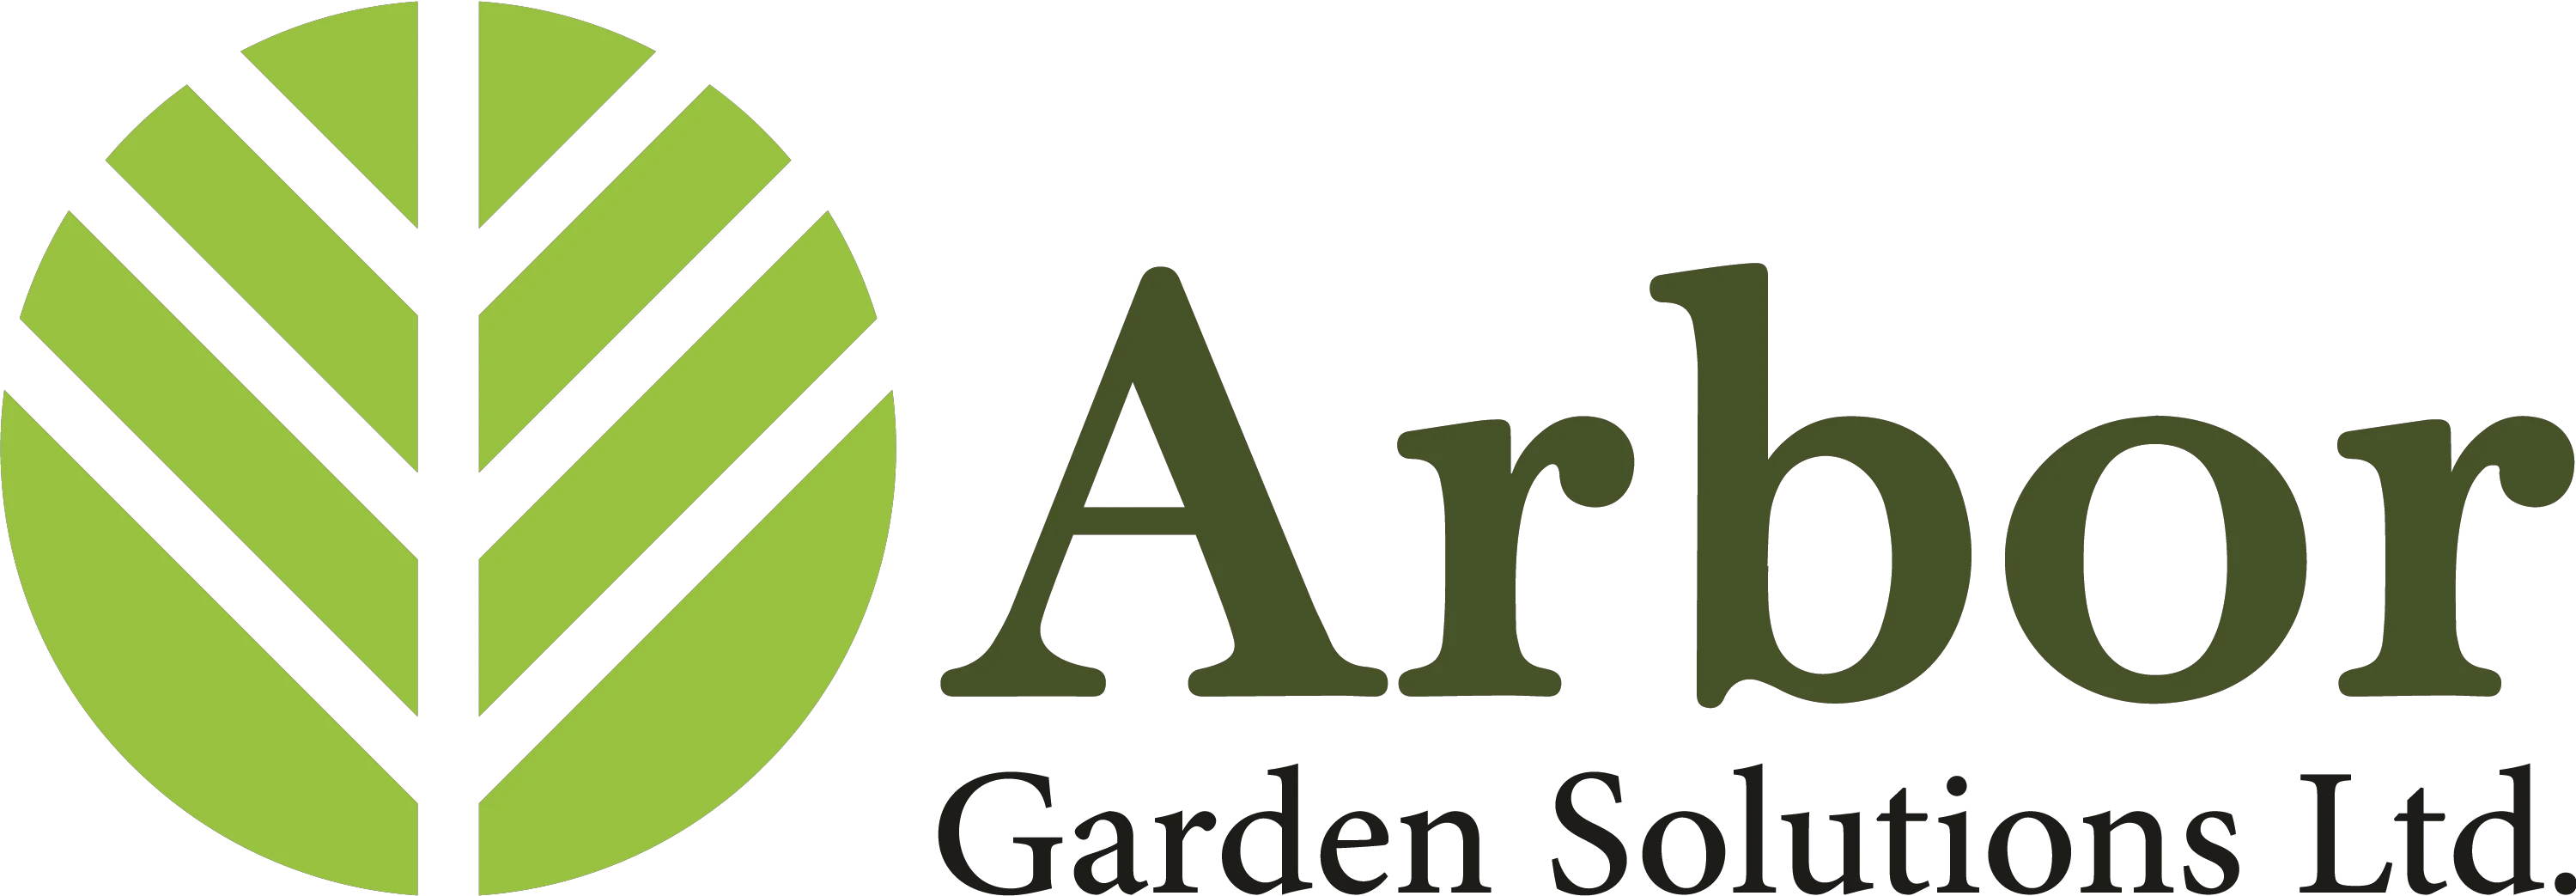 Cupons Arbor Garden Solutions 